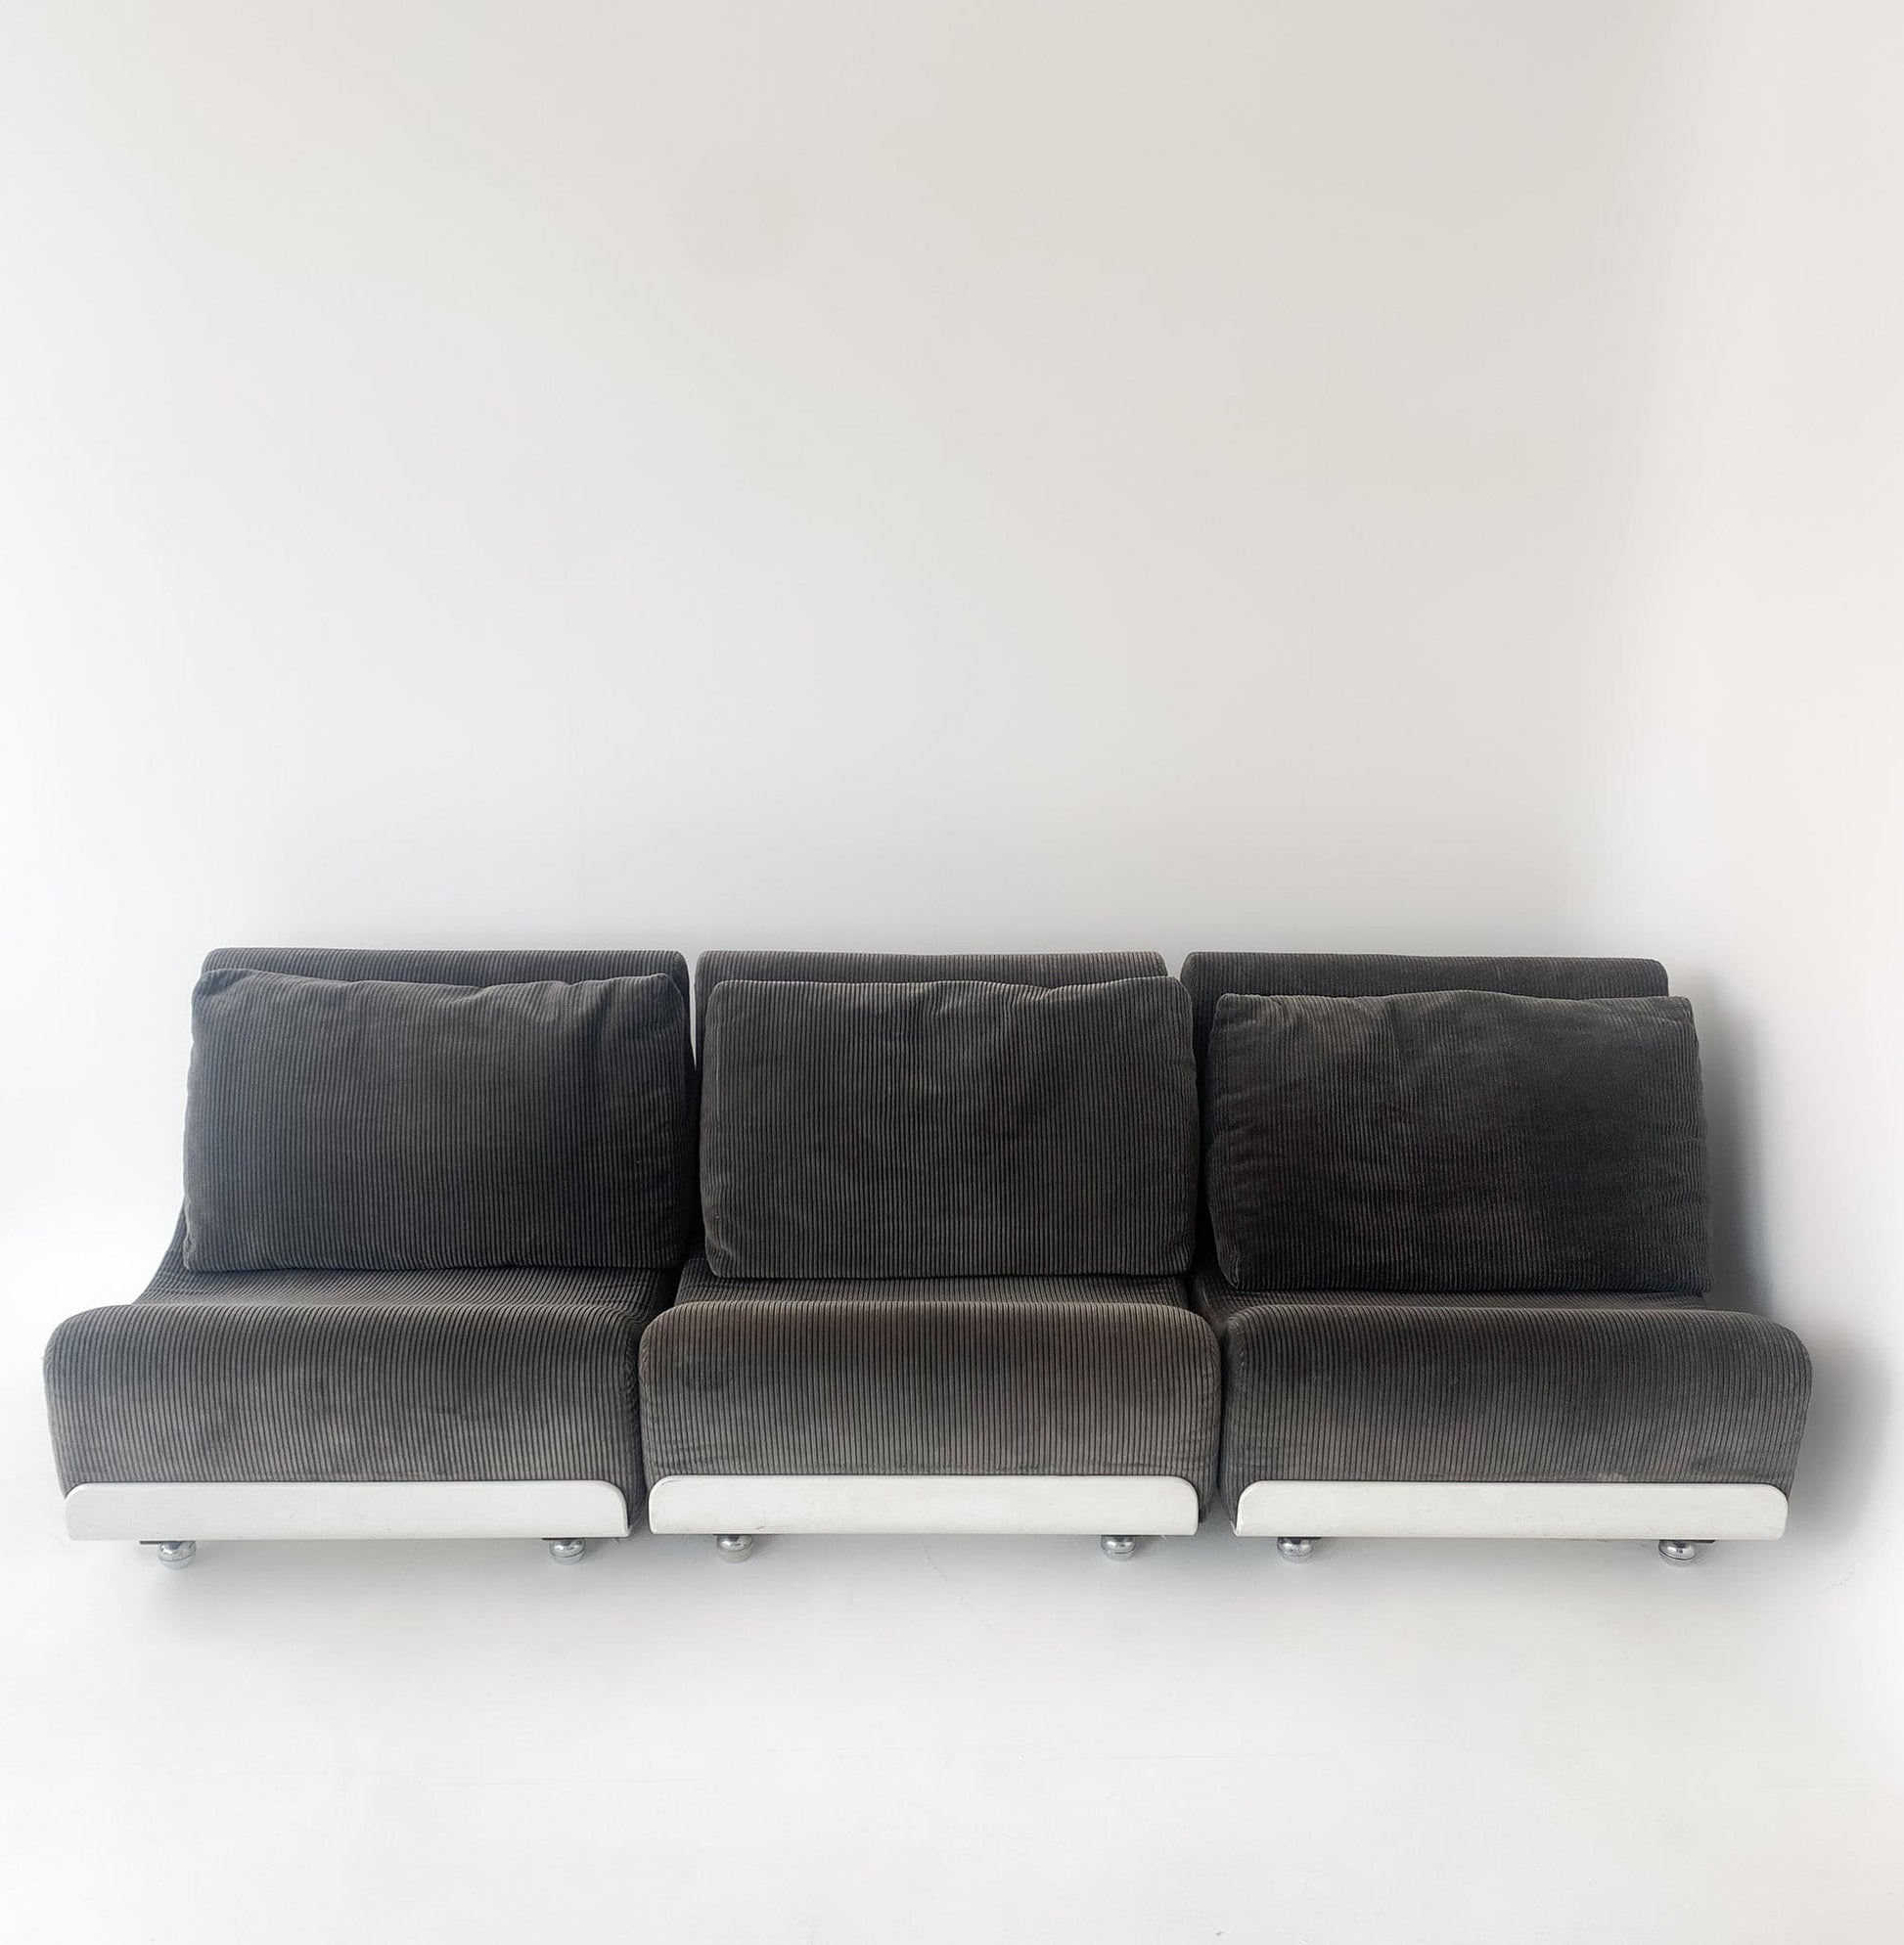 Graues Orbis Sofa Elemente von Luigi Colani Vintage - 2nd home